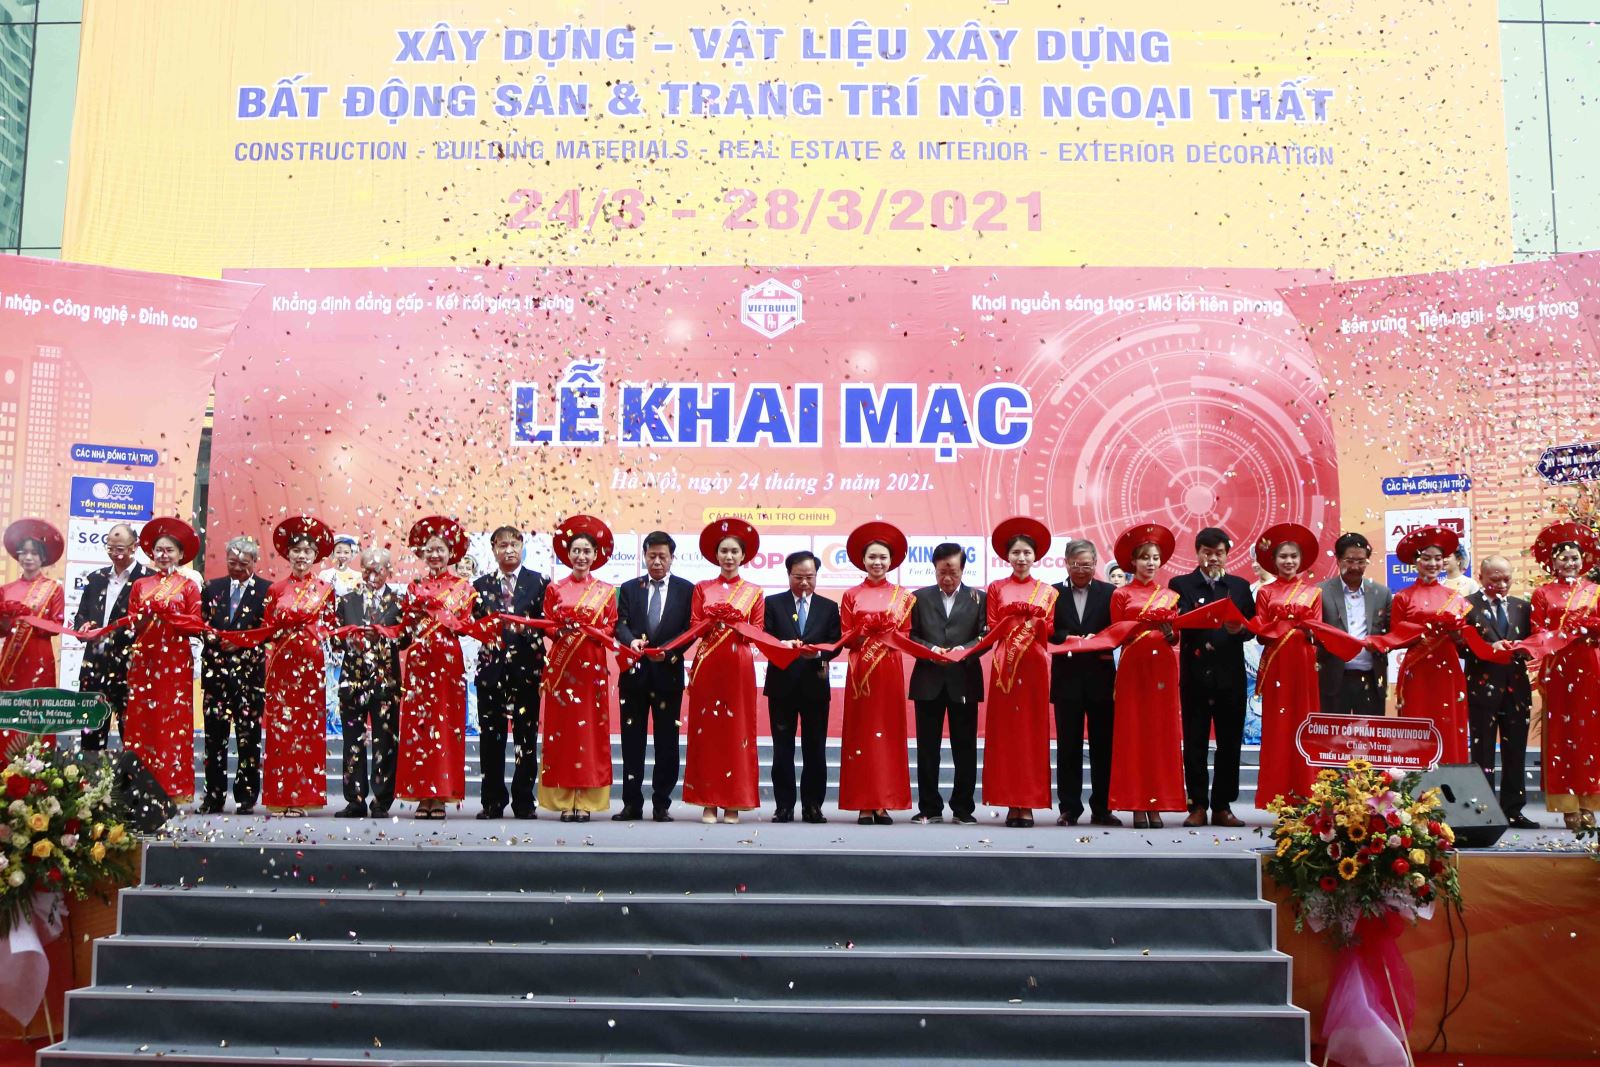 Thứ trưởng Bộ Xây dựng Nguyễn Văn Sinh và các đại biểu cắt băng khai mạc Triển lãm